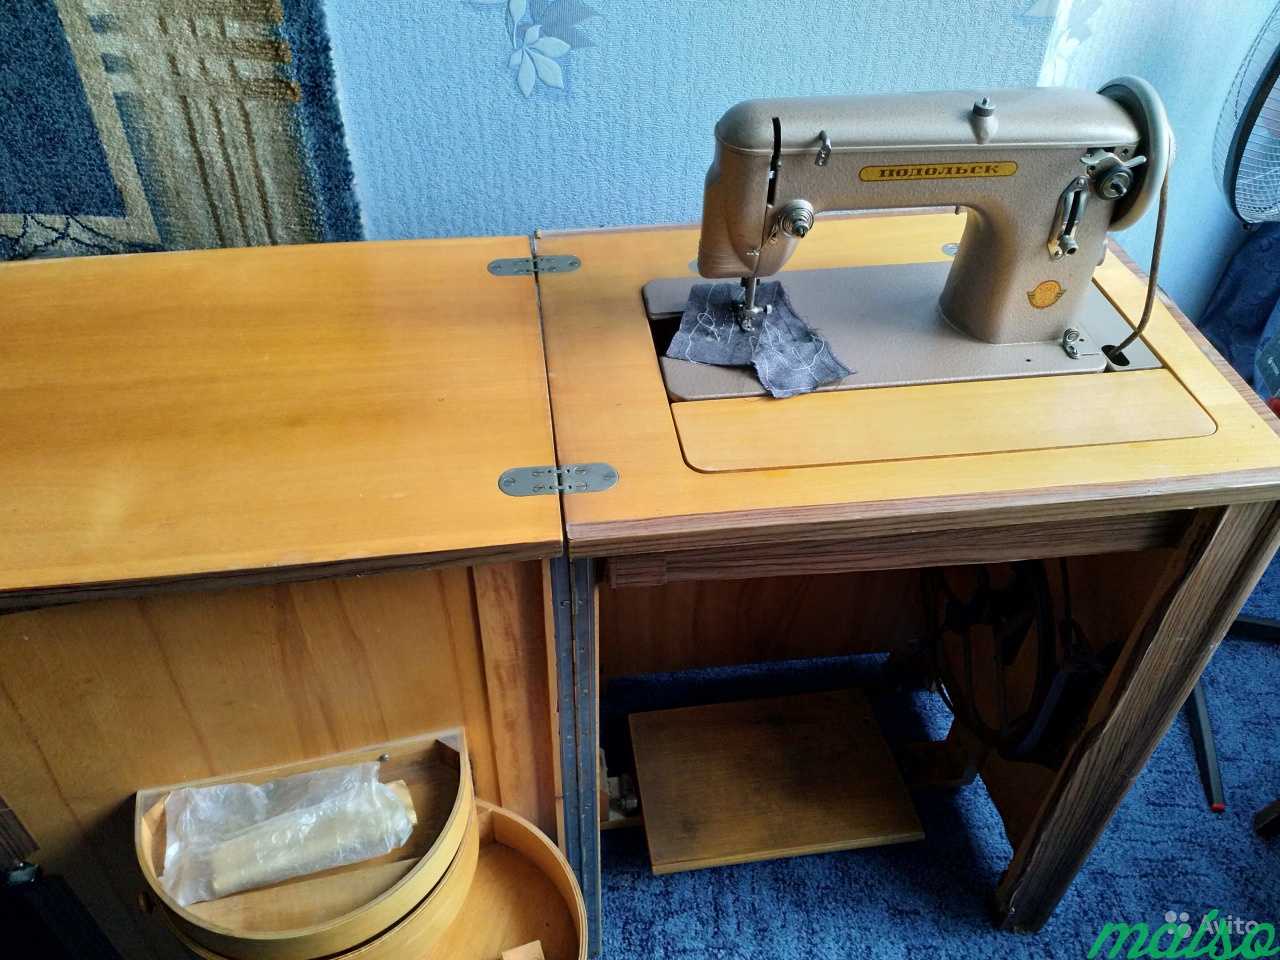 Продам швейную машинку б у. Машинка швейная ножная с электроприводом "Подольск 142". Подольска швейная машина с3106463. Подольск швейная машина с1910267. Подольская швейная машинка Чайка ножная.